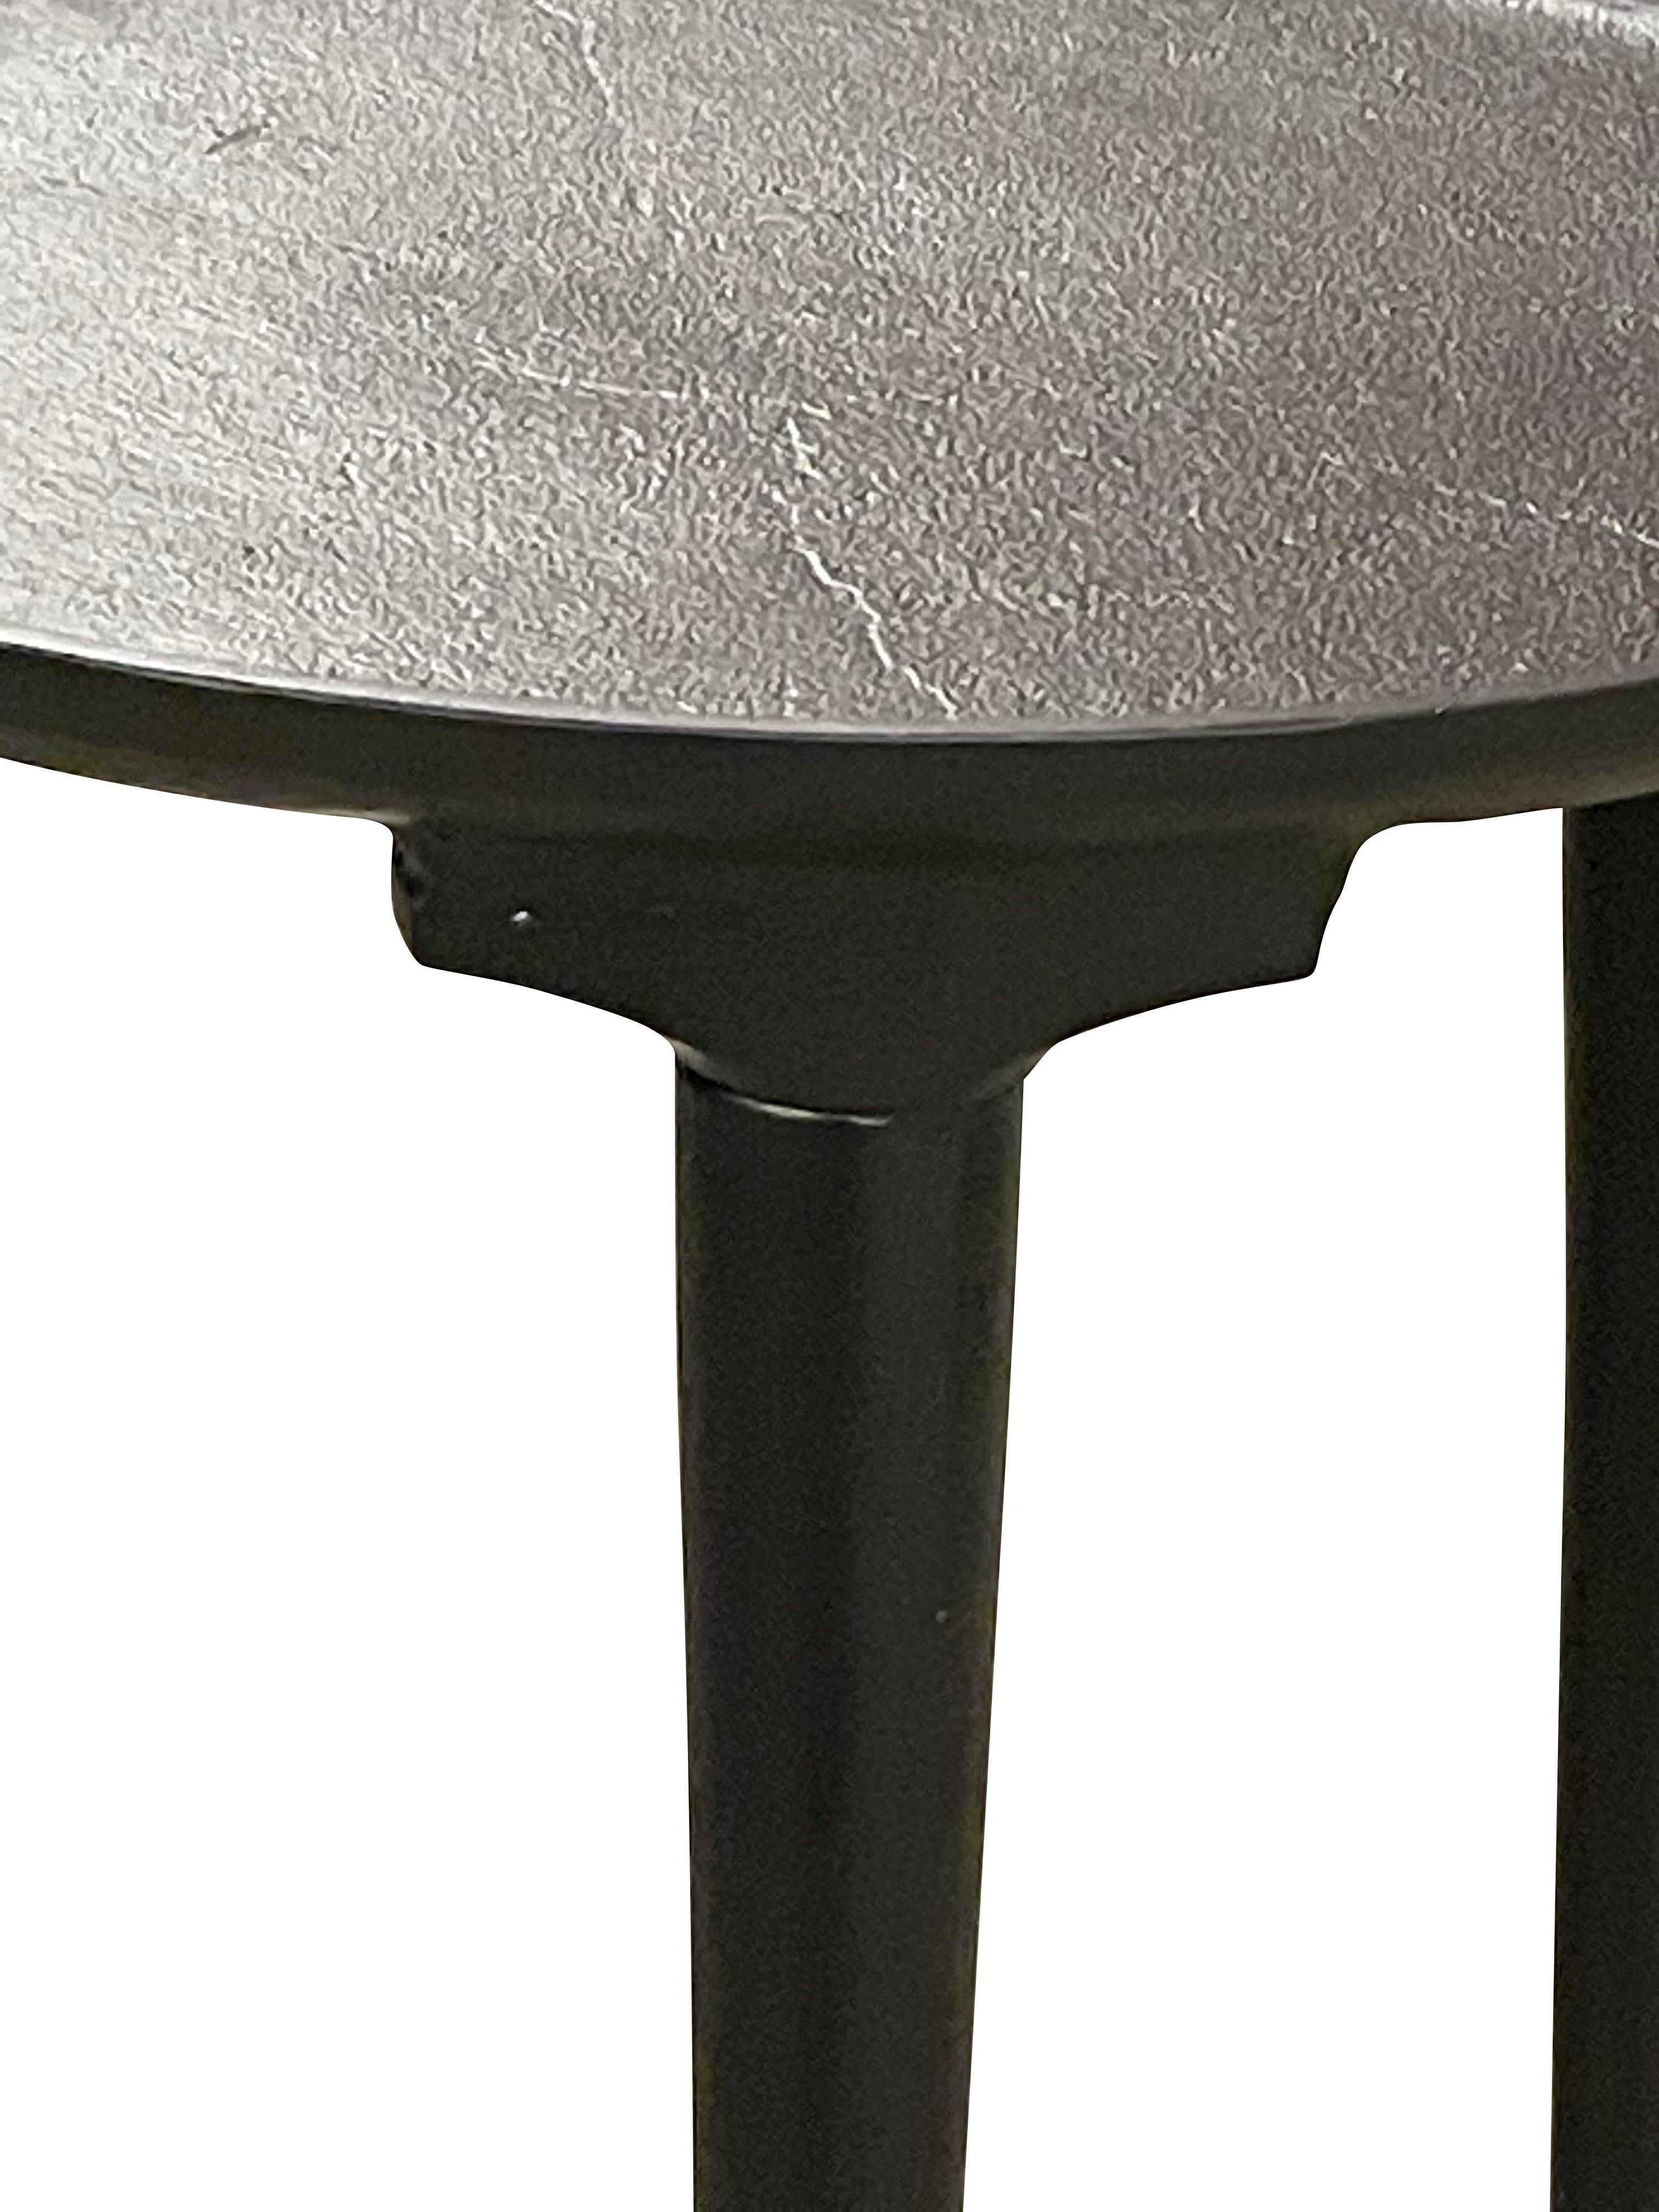 Table basse ronde indienne contemporaine en fer noir.
Trois pieds fuselés avec un plateau en forme de T.
Finition légèrement texturée.
Détail de la lèvre en relief sur le bord supérieur.
Également disponible en tant que table basse (F2913)
ARRIVEE